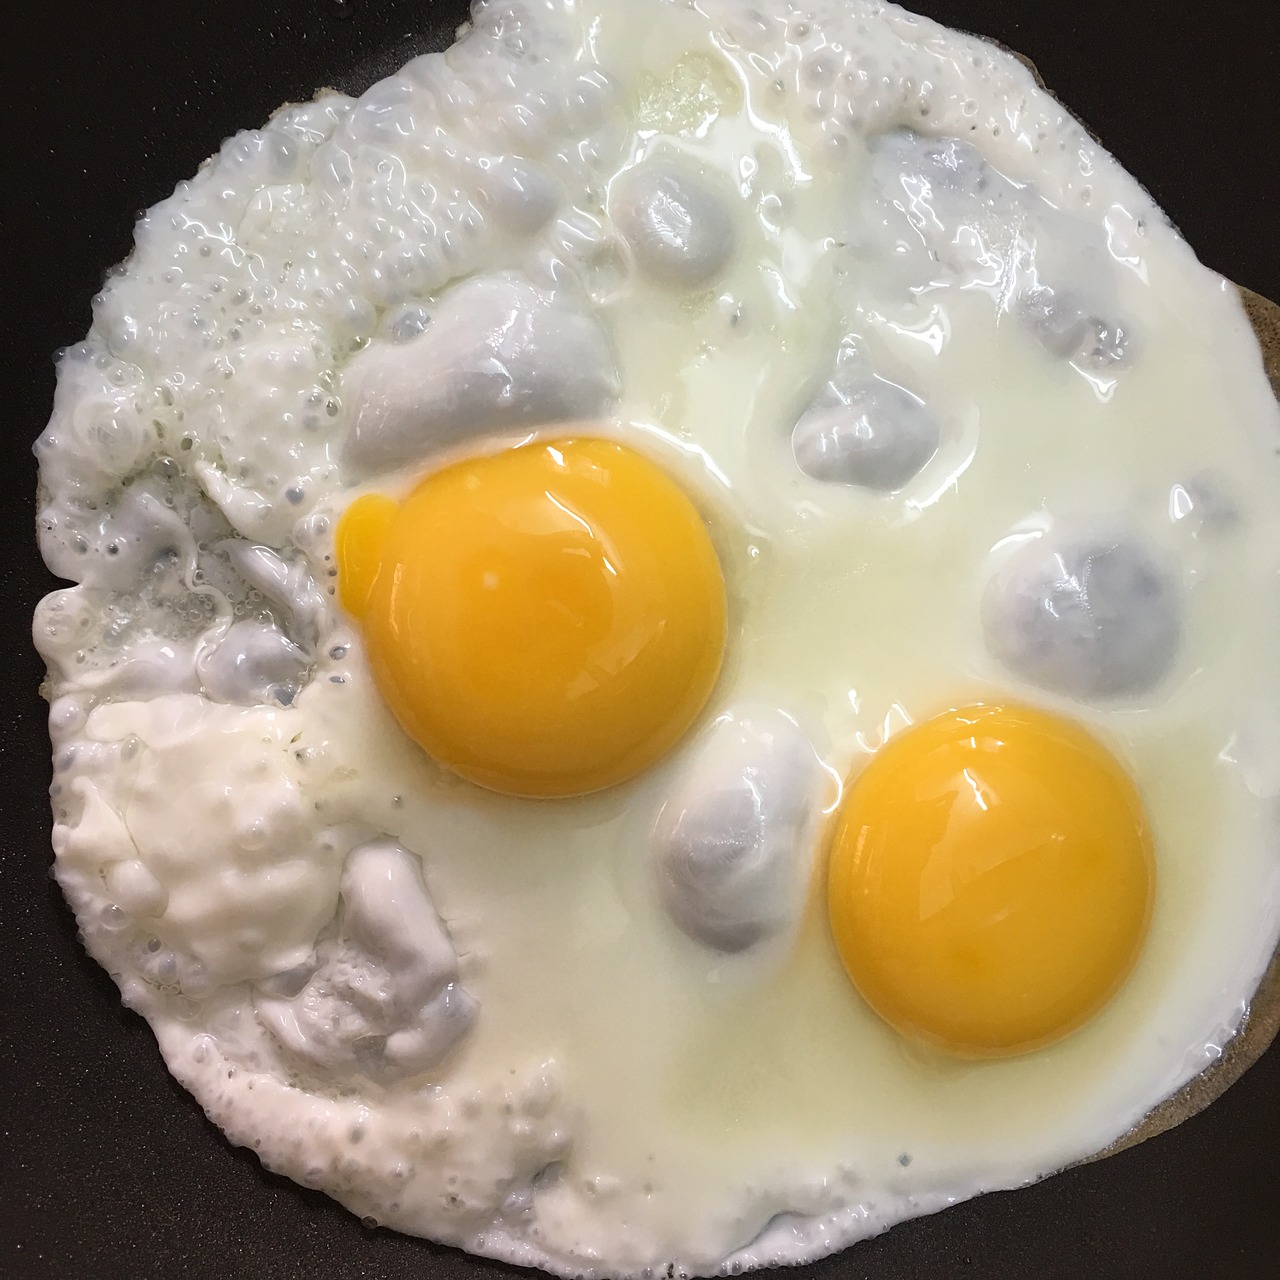 Eggs up. Санни Сайд ап яичница. Жареные яйца. Завтрак с яйцом. Завтрак с вареными яйцами.